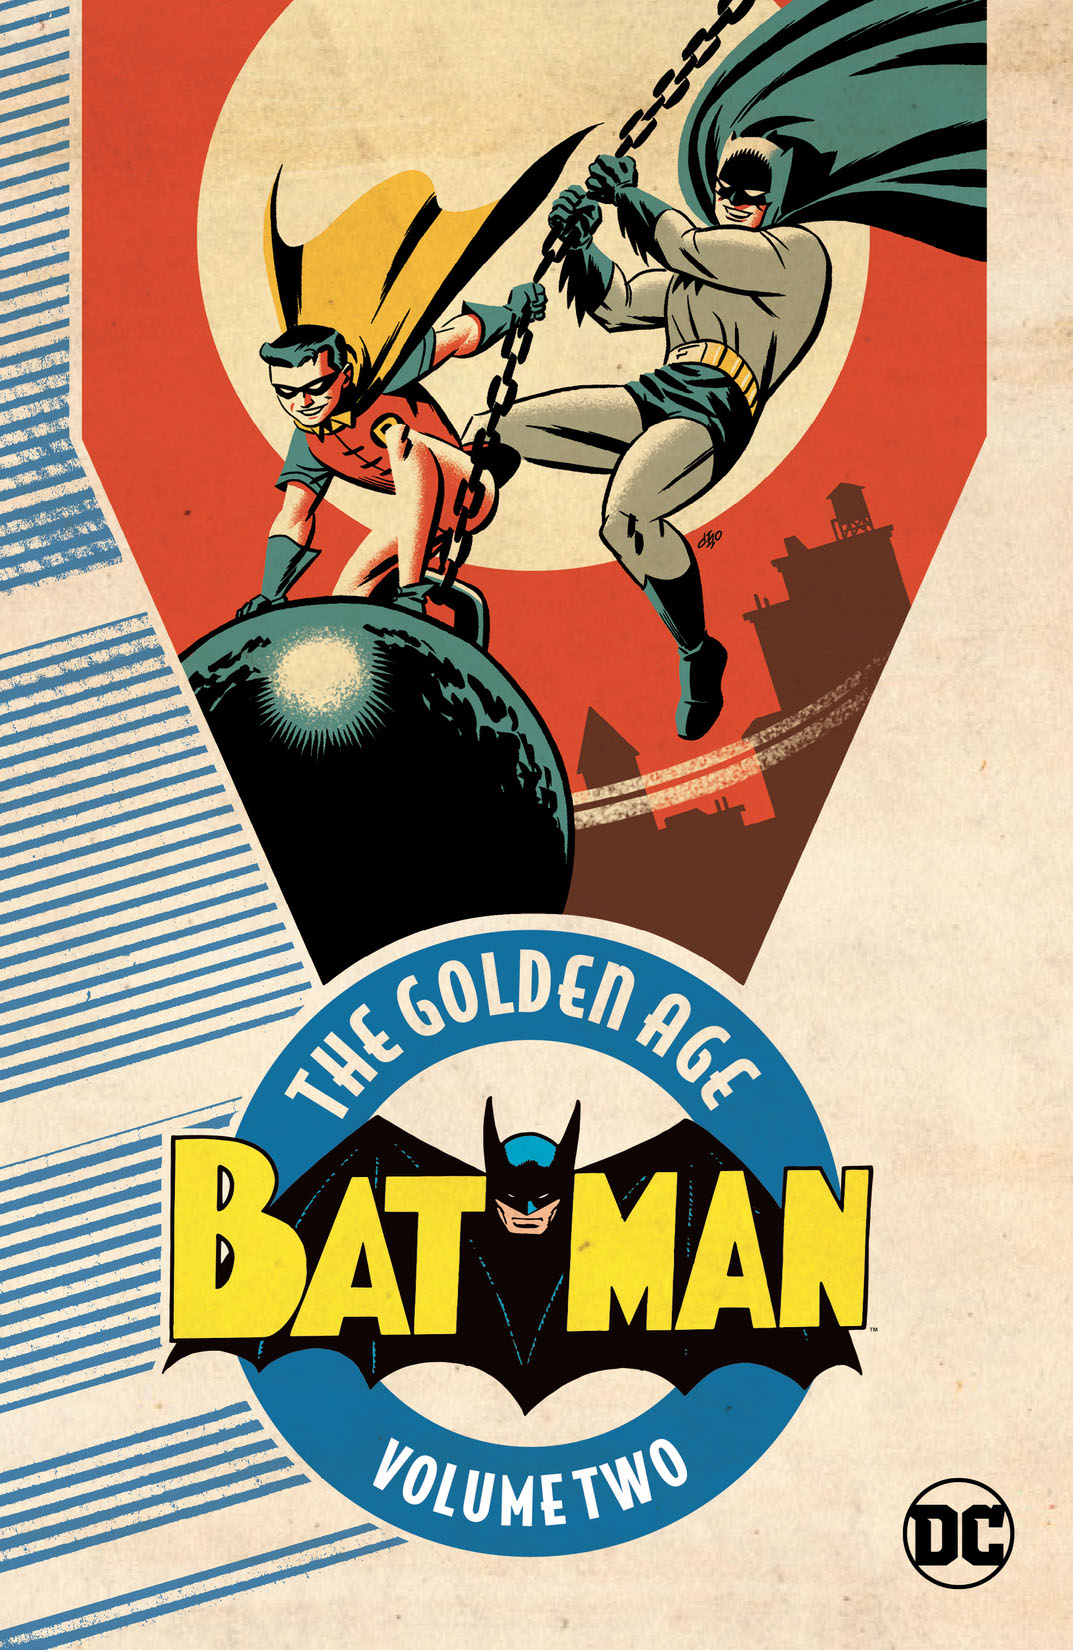 Batman: The Golden Age Vol. 2 preview images